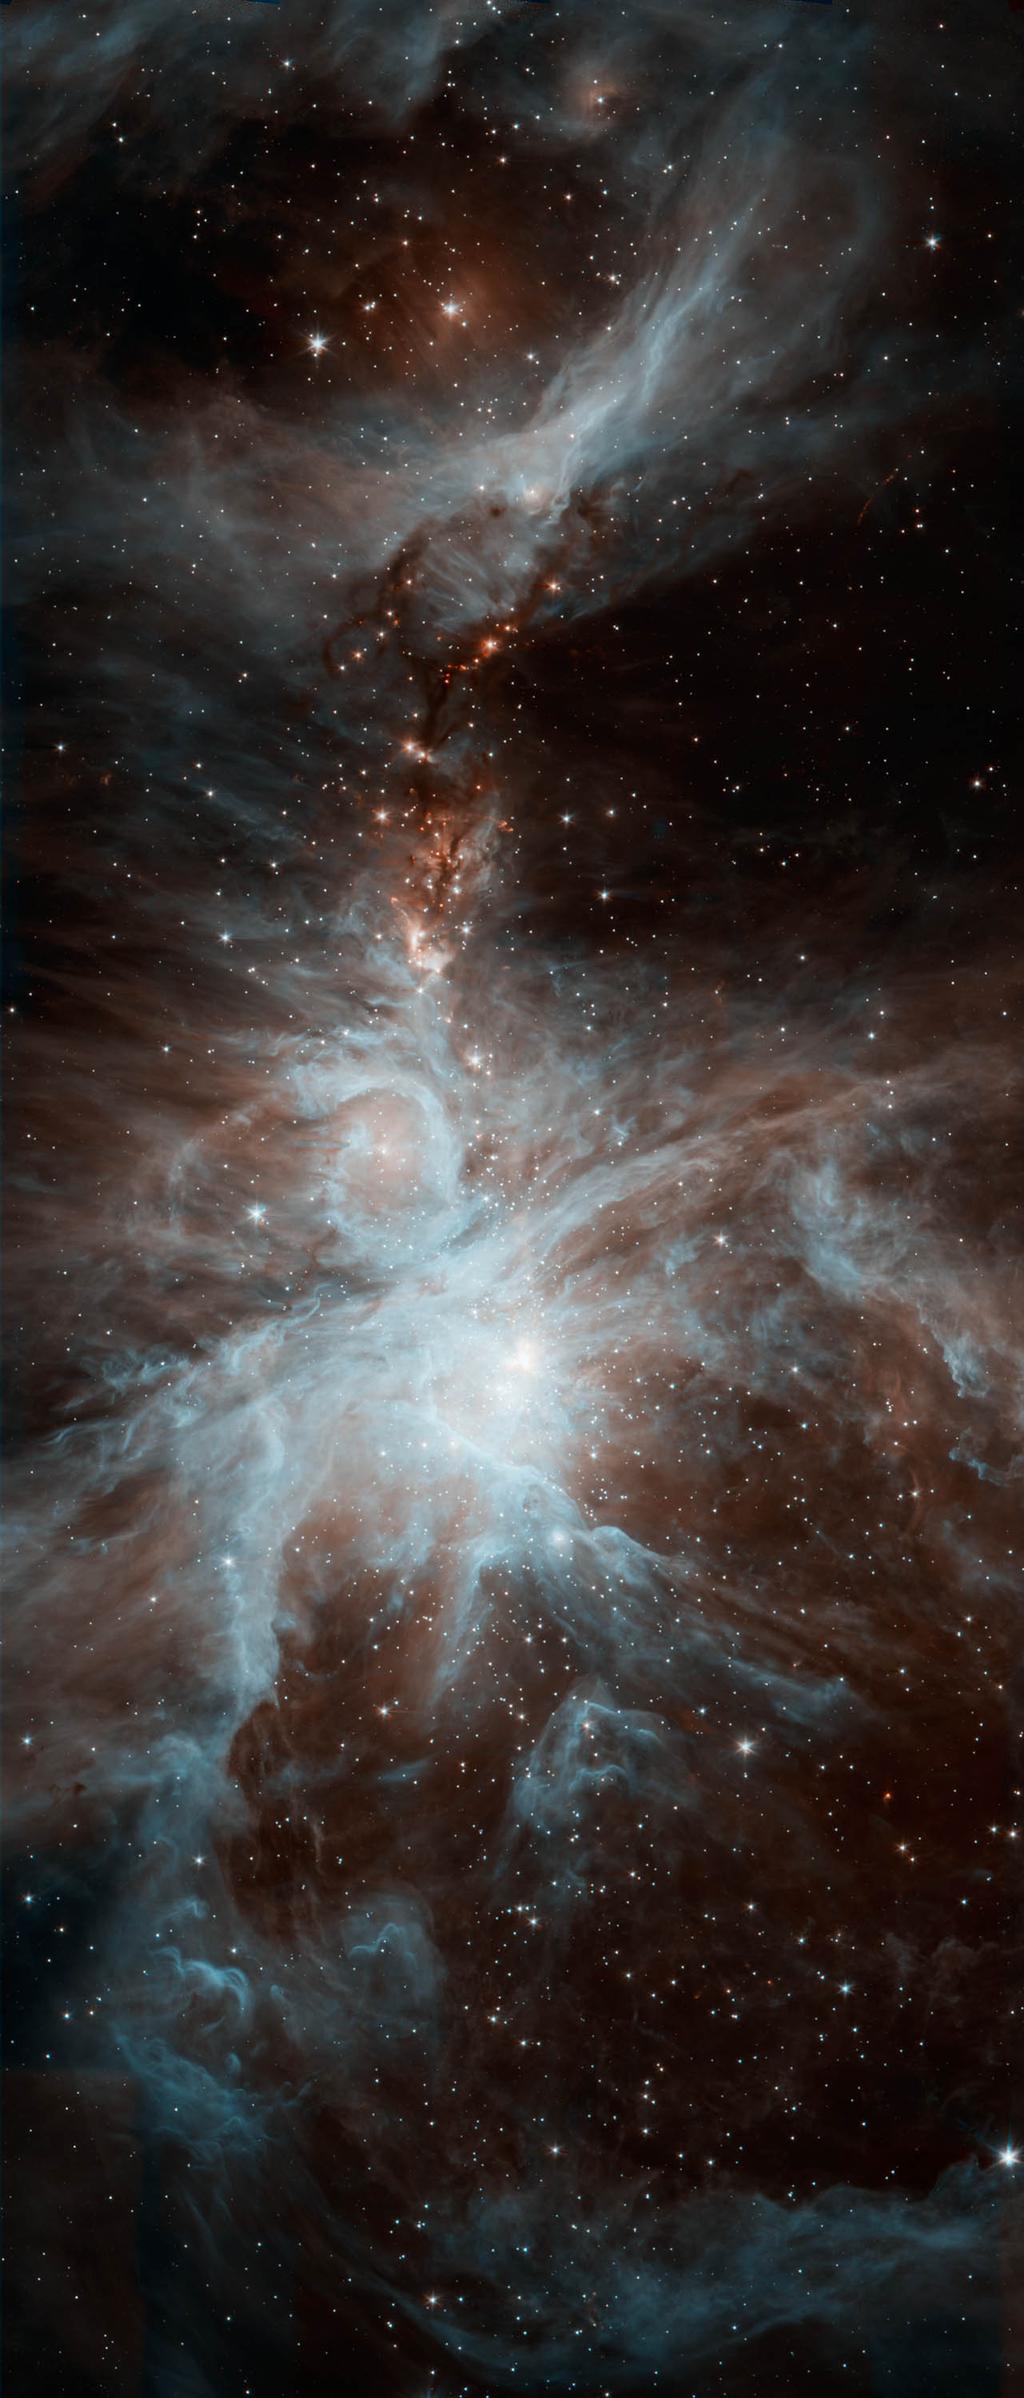 Samenvatting Figure S.1: Een gedeelte van het complex van moleculaire reuzenwolken in Orion, gezien in nabij infrarood licht met de Spitzer ruimtetelescoop.